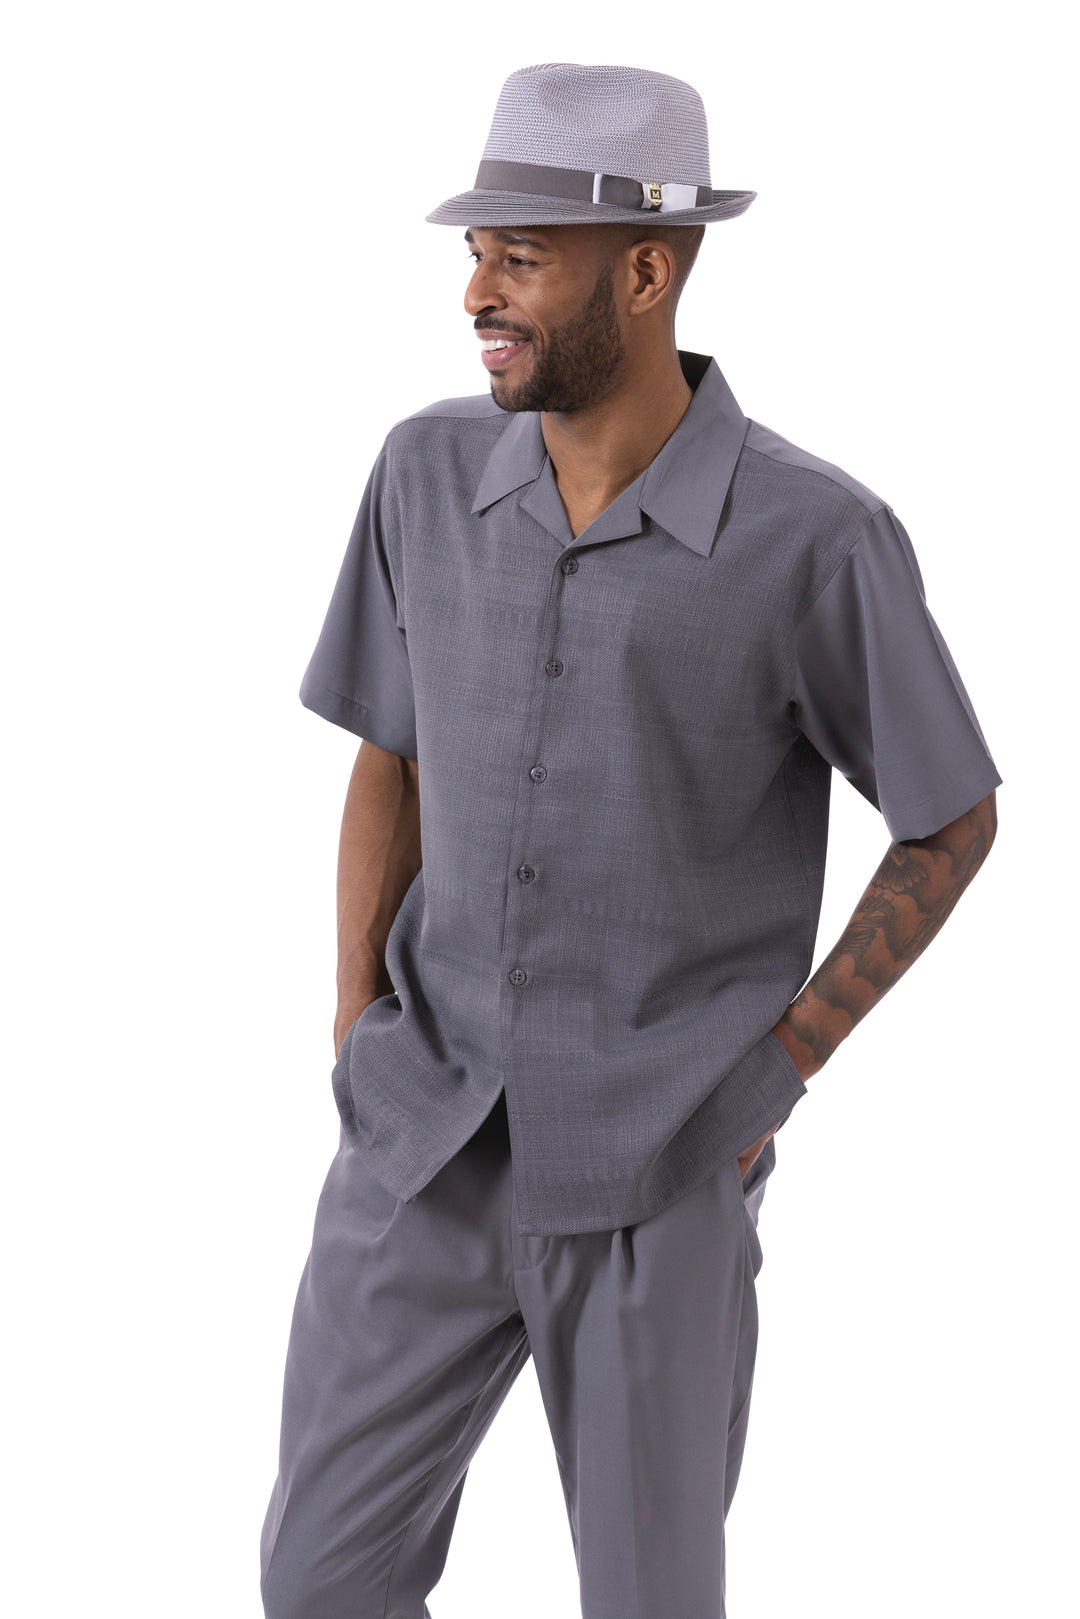 Montique Mens Fancy  2 Piece Leisure Walking Suit Set Short Sleeve-Grey